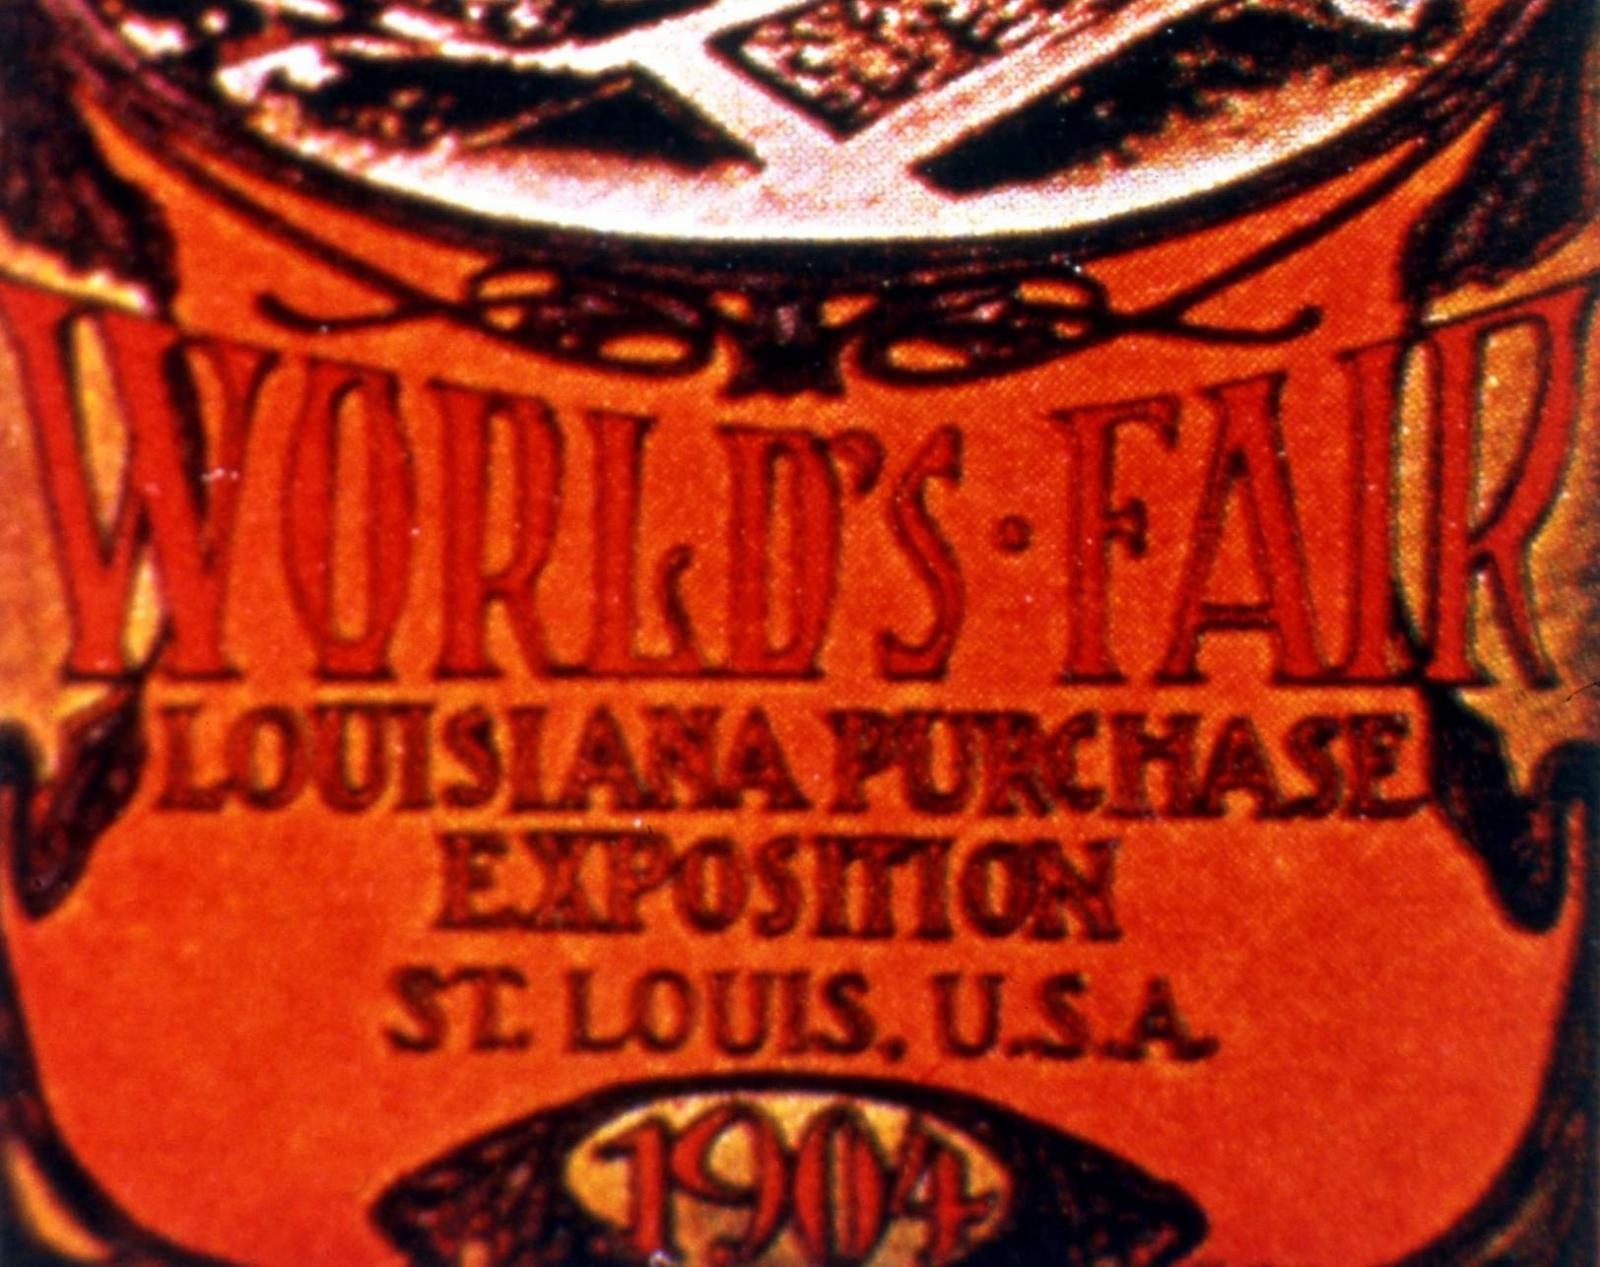 St. Louis 1904 - La Presse